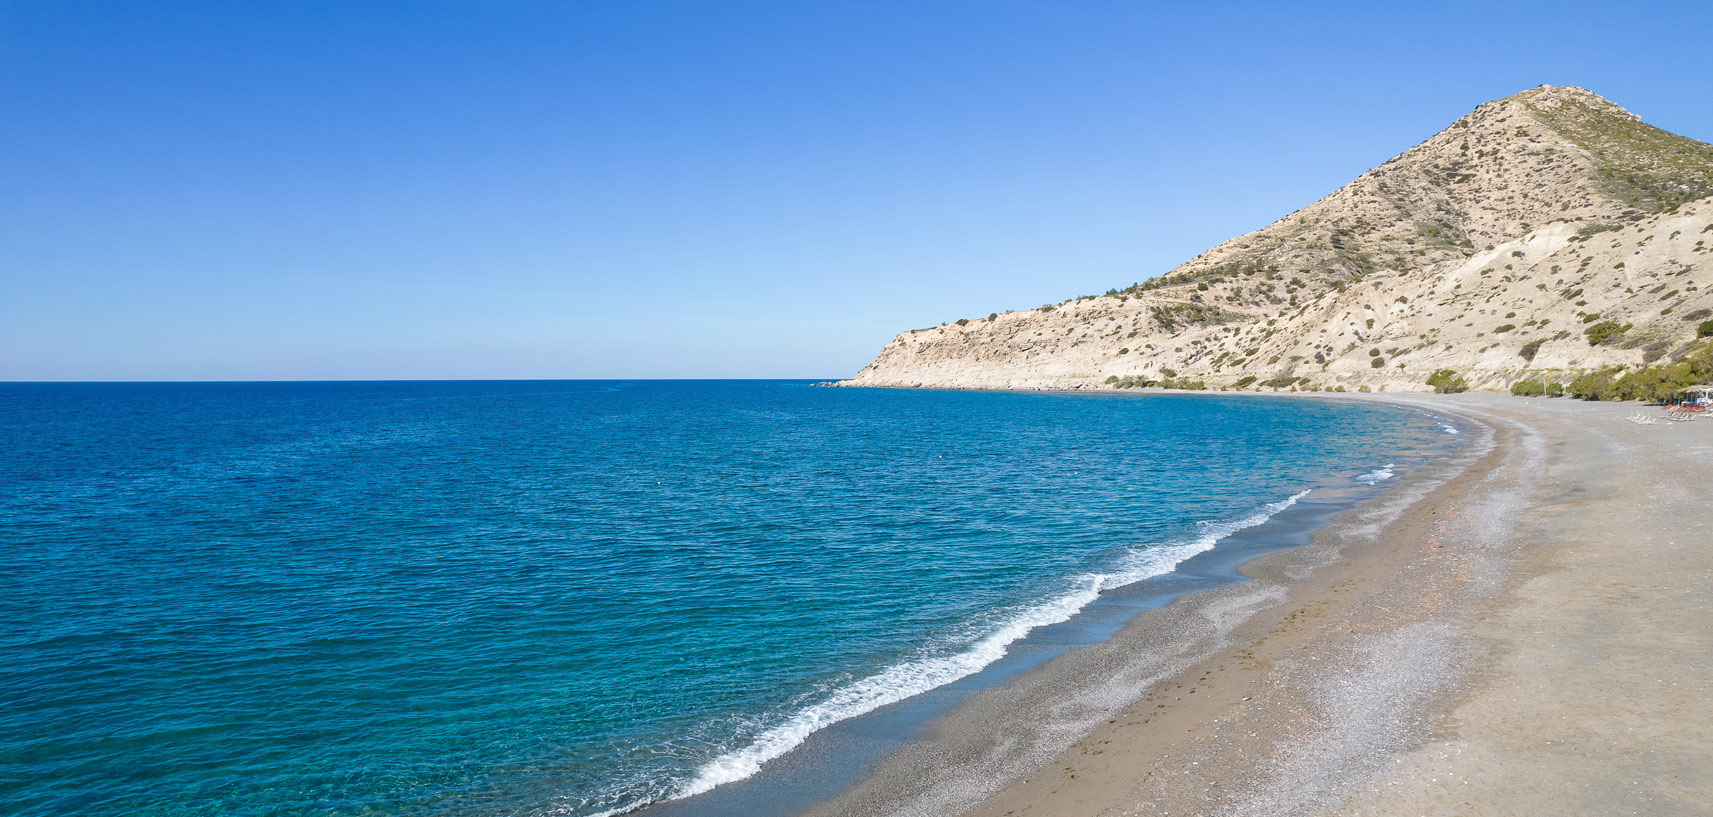 Beach with golden sand in Crete